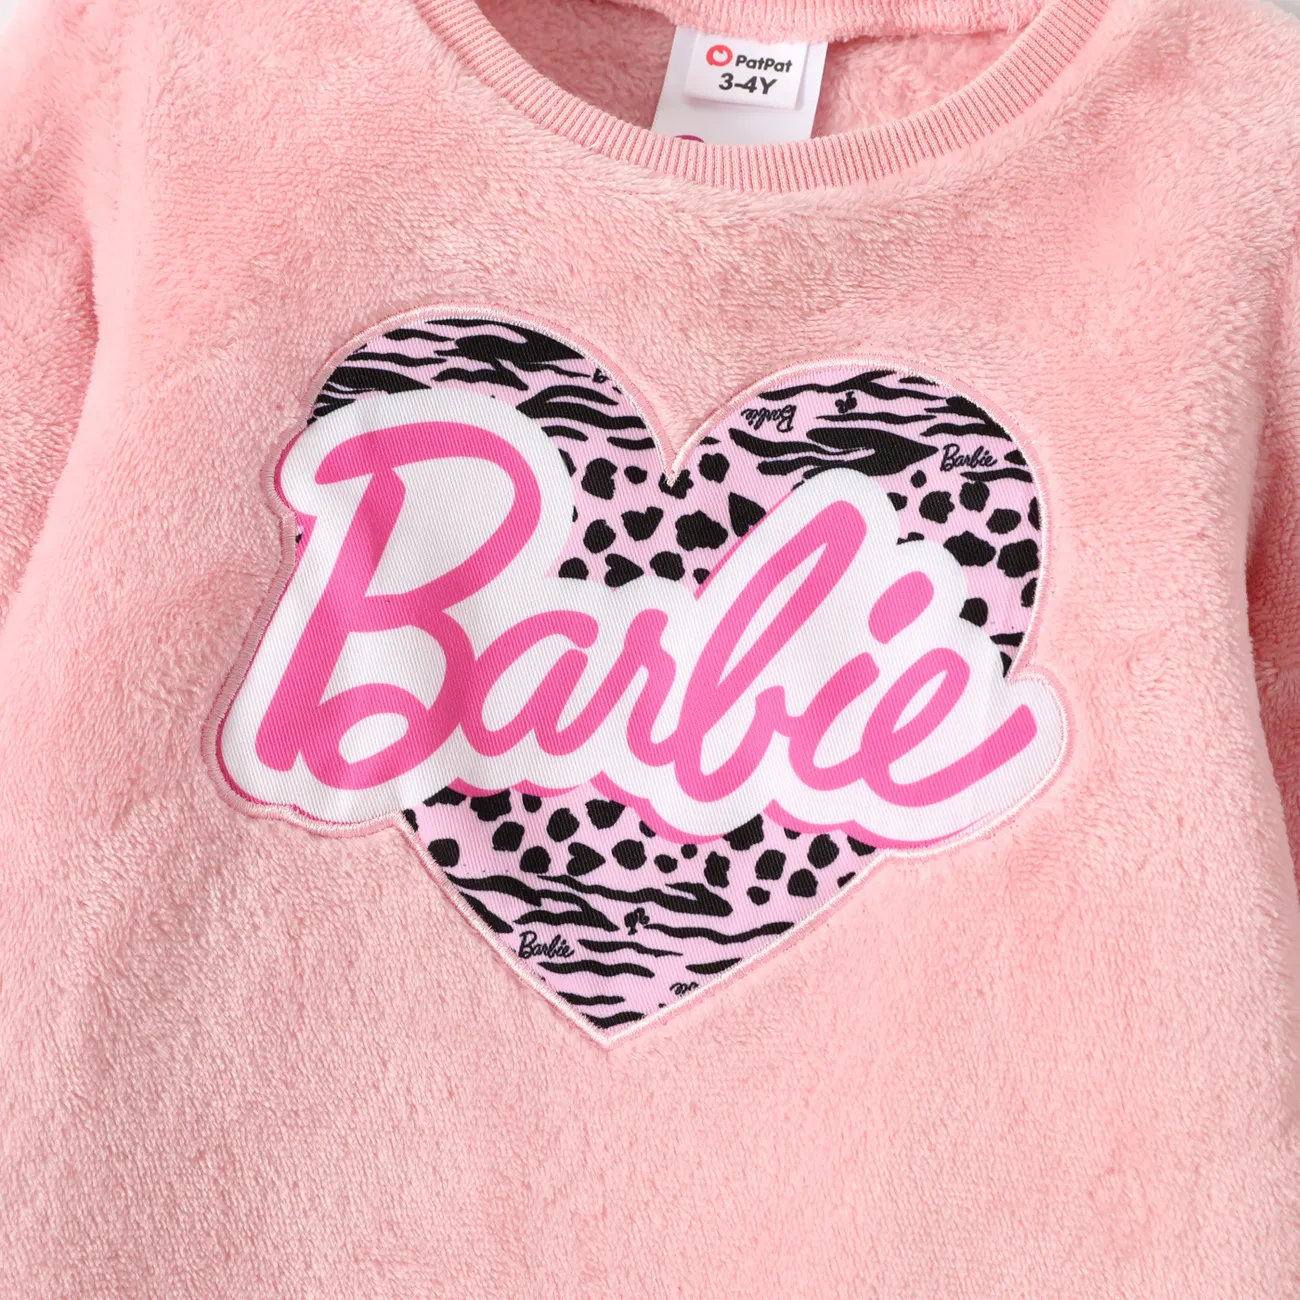 Barbie Kleinkinder Mädchen Süß Kleider rosa big image 1